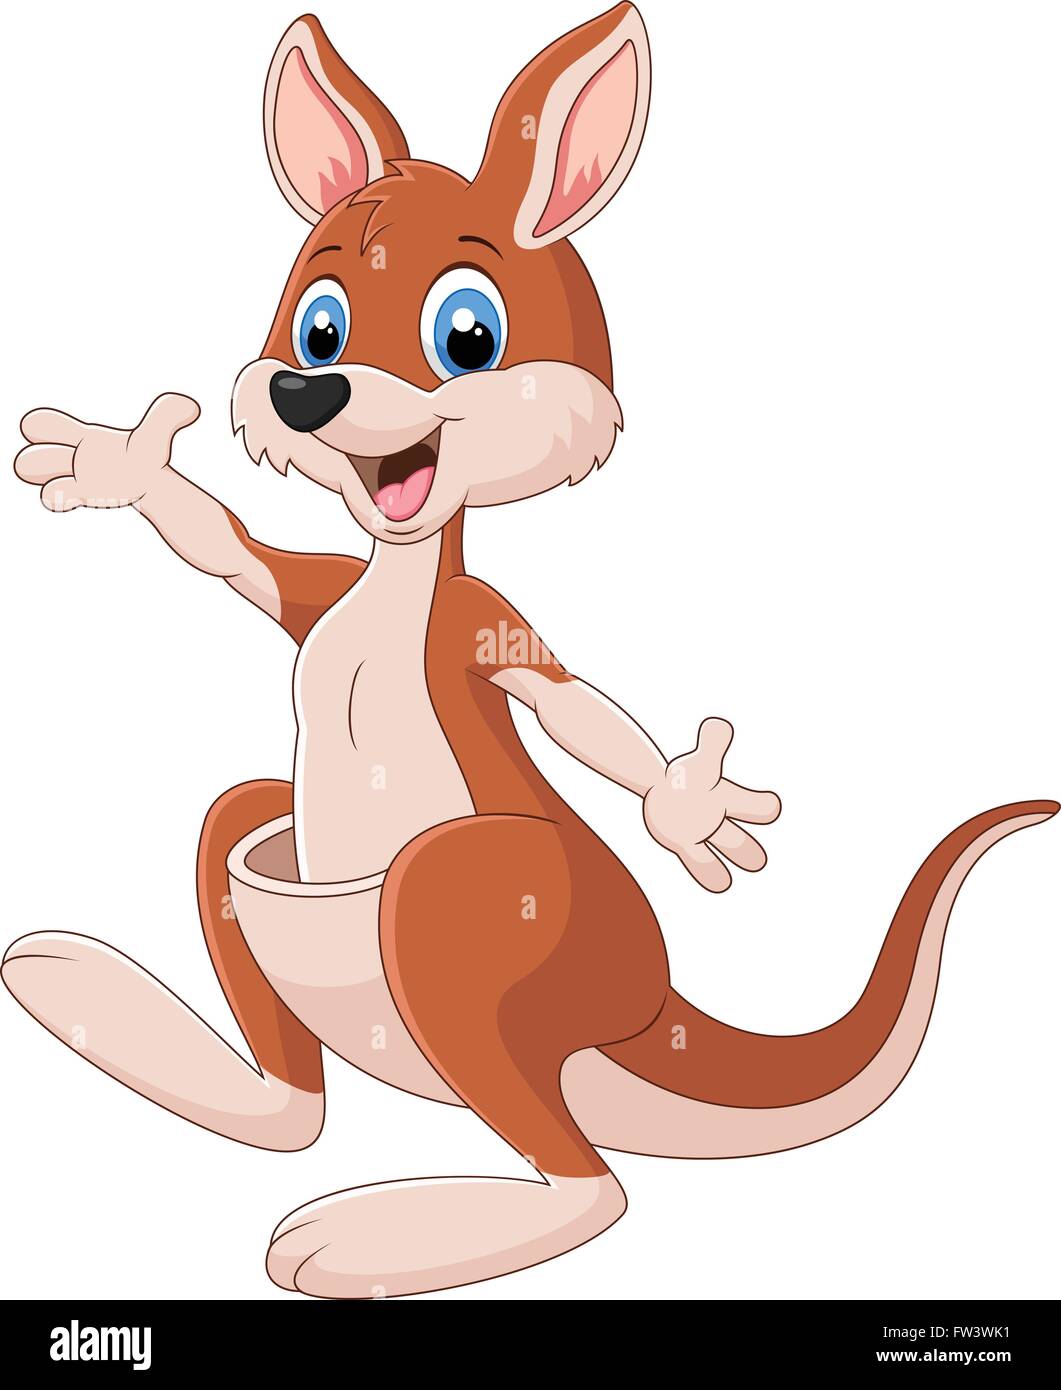 Kangaroo cartoon hi-res stock photography and images - Alamy